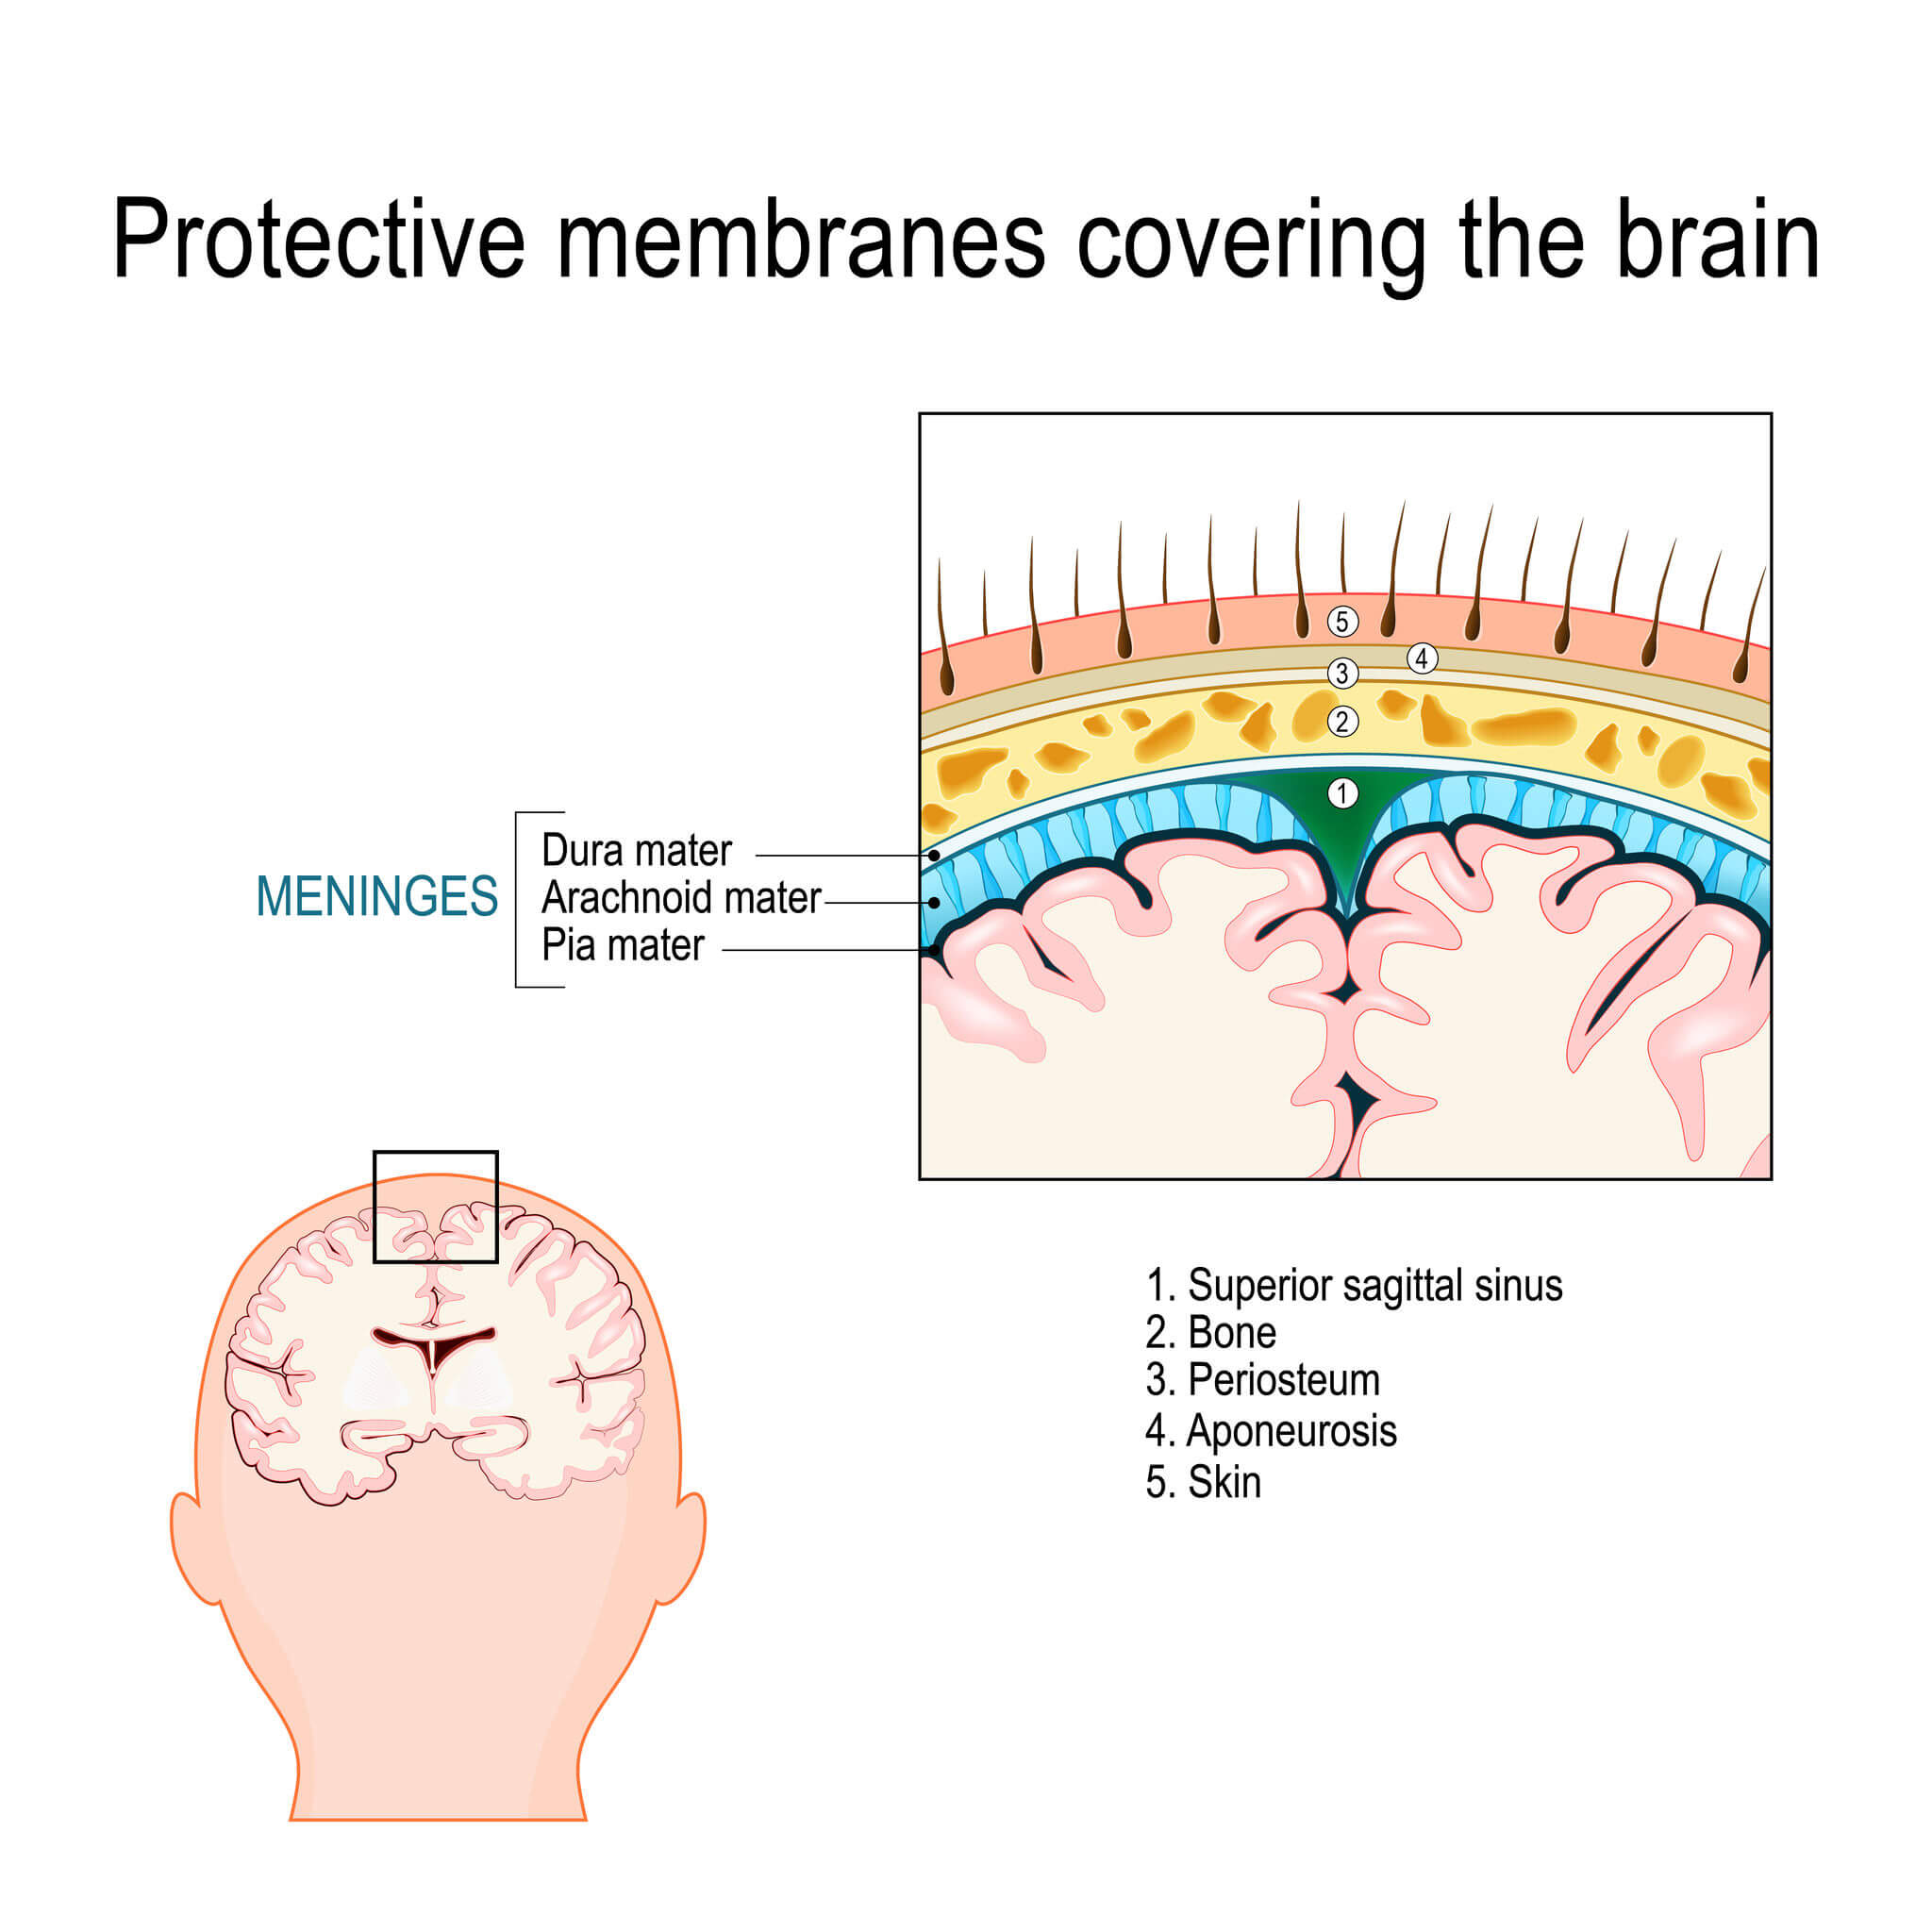 dura madre, pia madre e aracnoide sono le tre meningi che proteggono il cervello